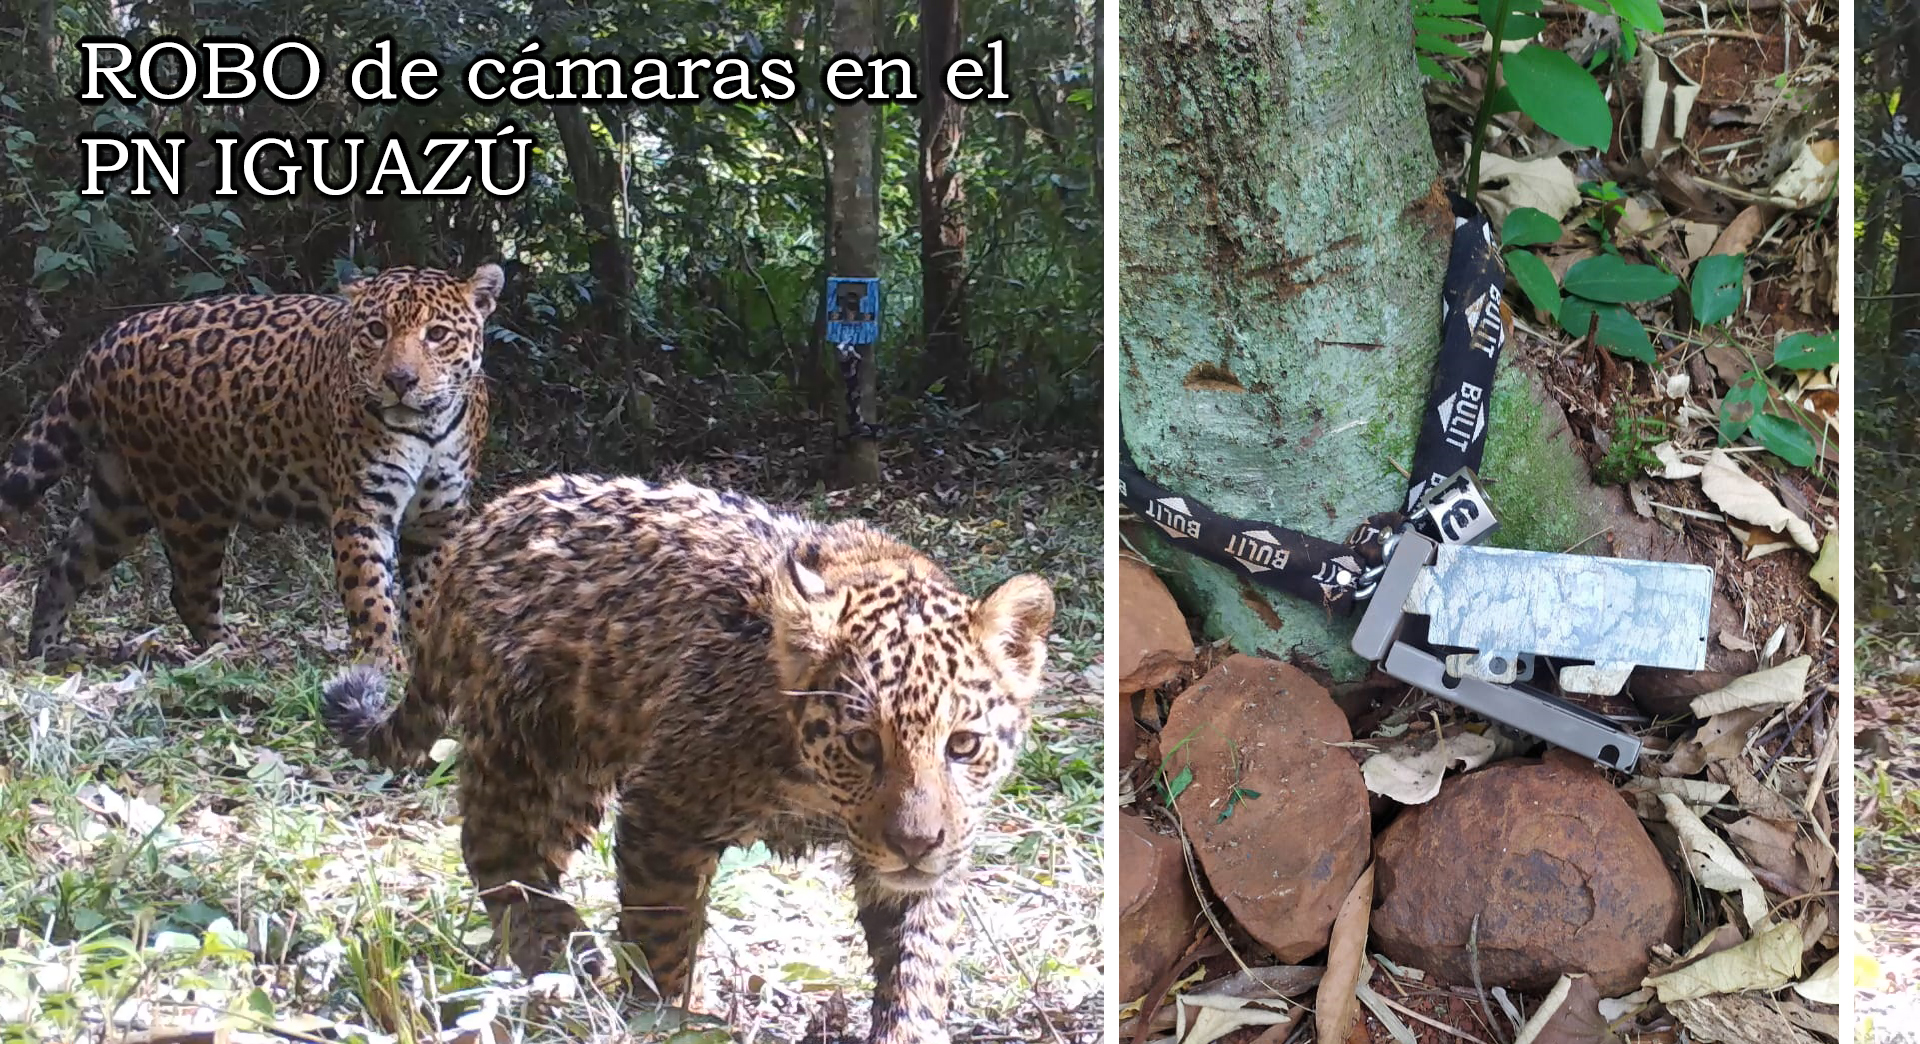 ONG pide seguridad en Parque Iguazú por estar "expuesto a actos vandálicos"